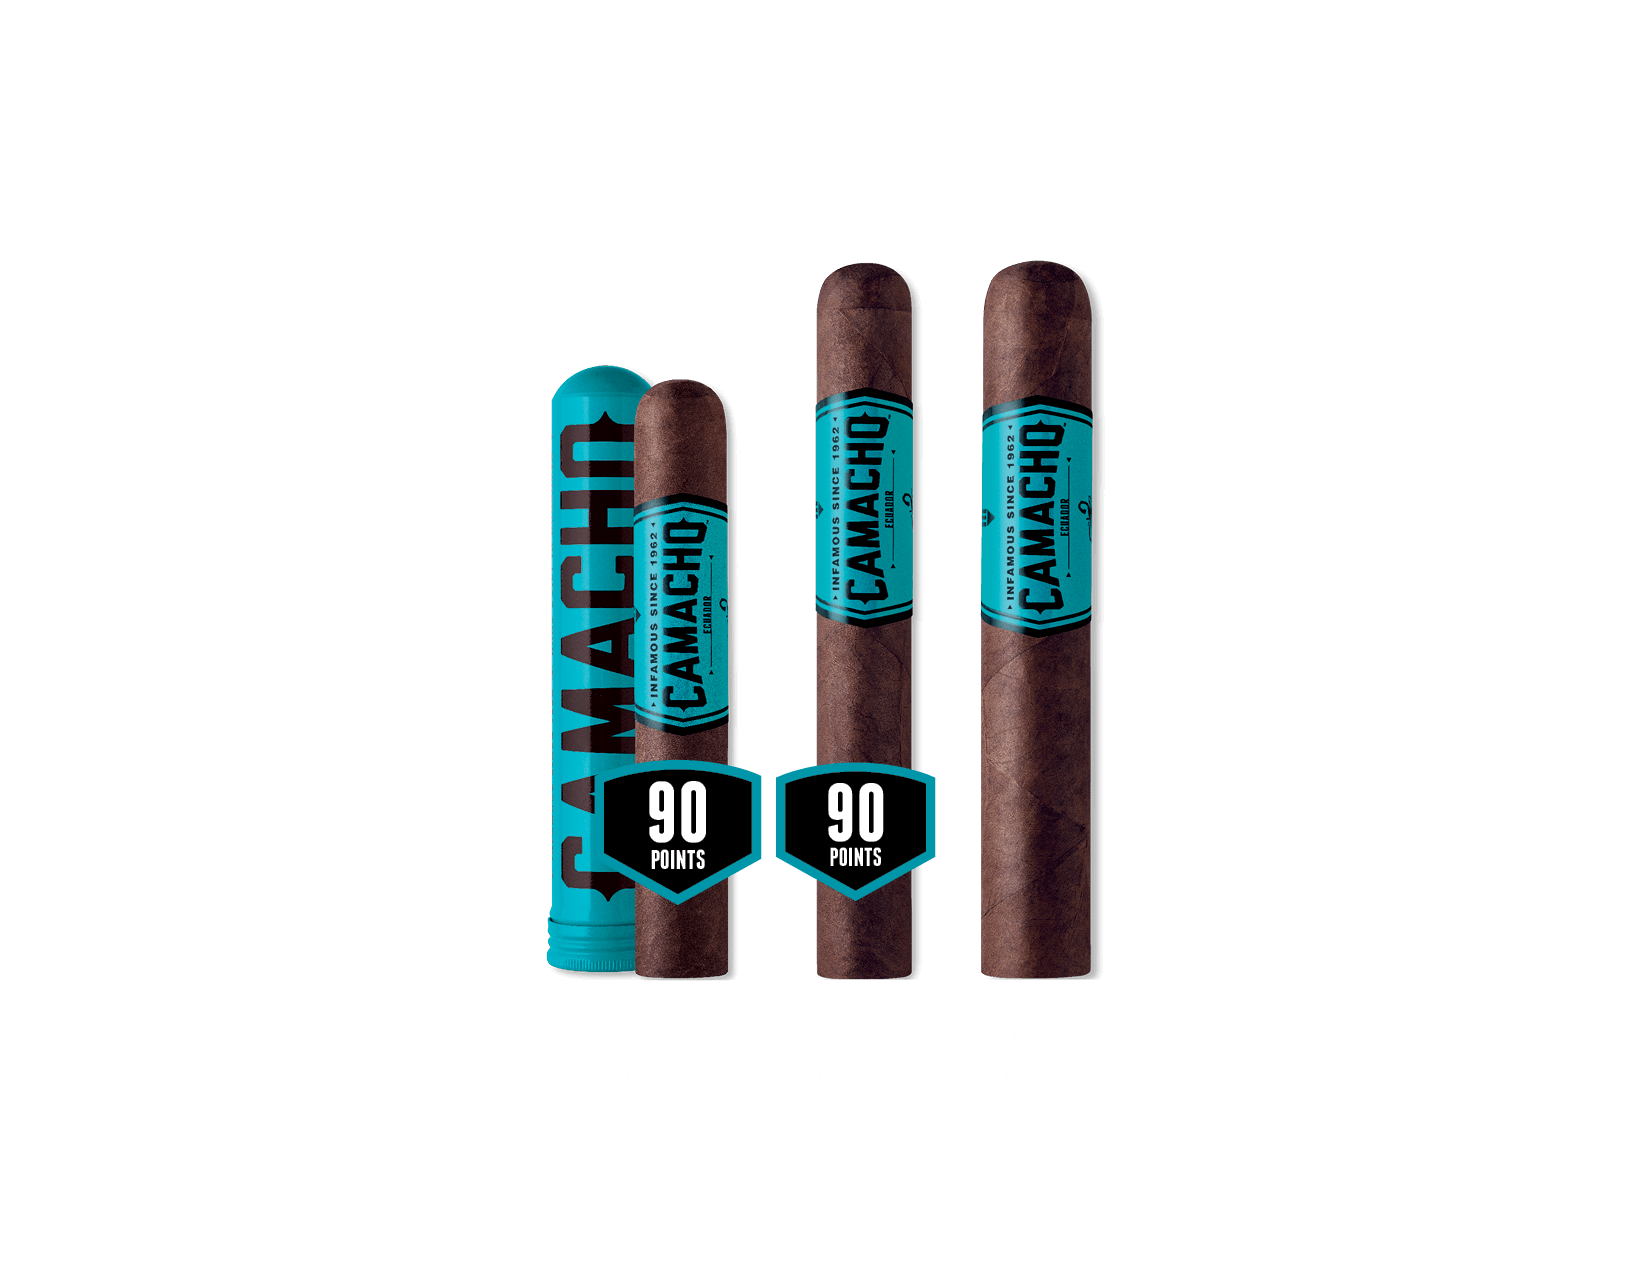 Camacho Ecuador Zigarren-Angebot - Robusto - Toro - Gordo 60x6